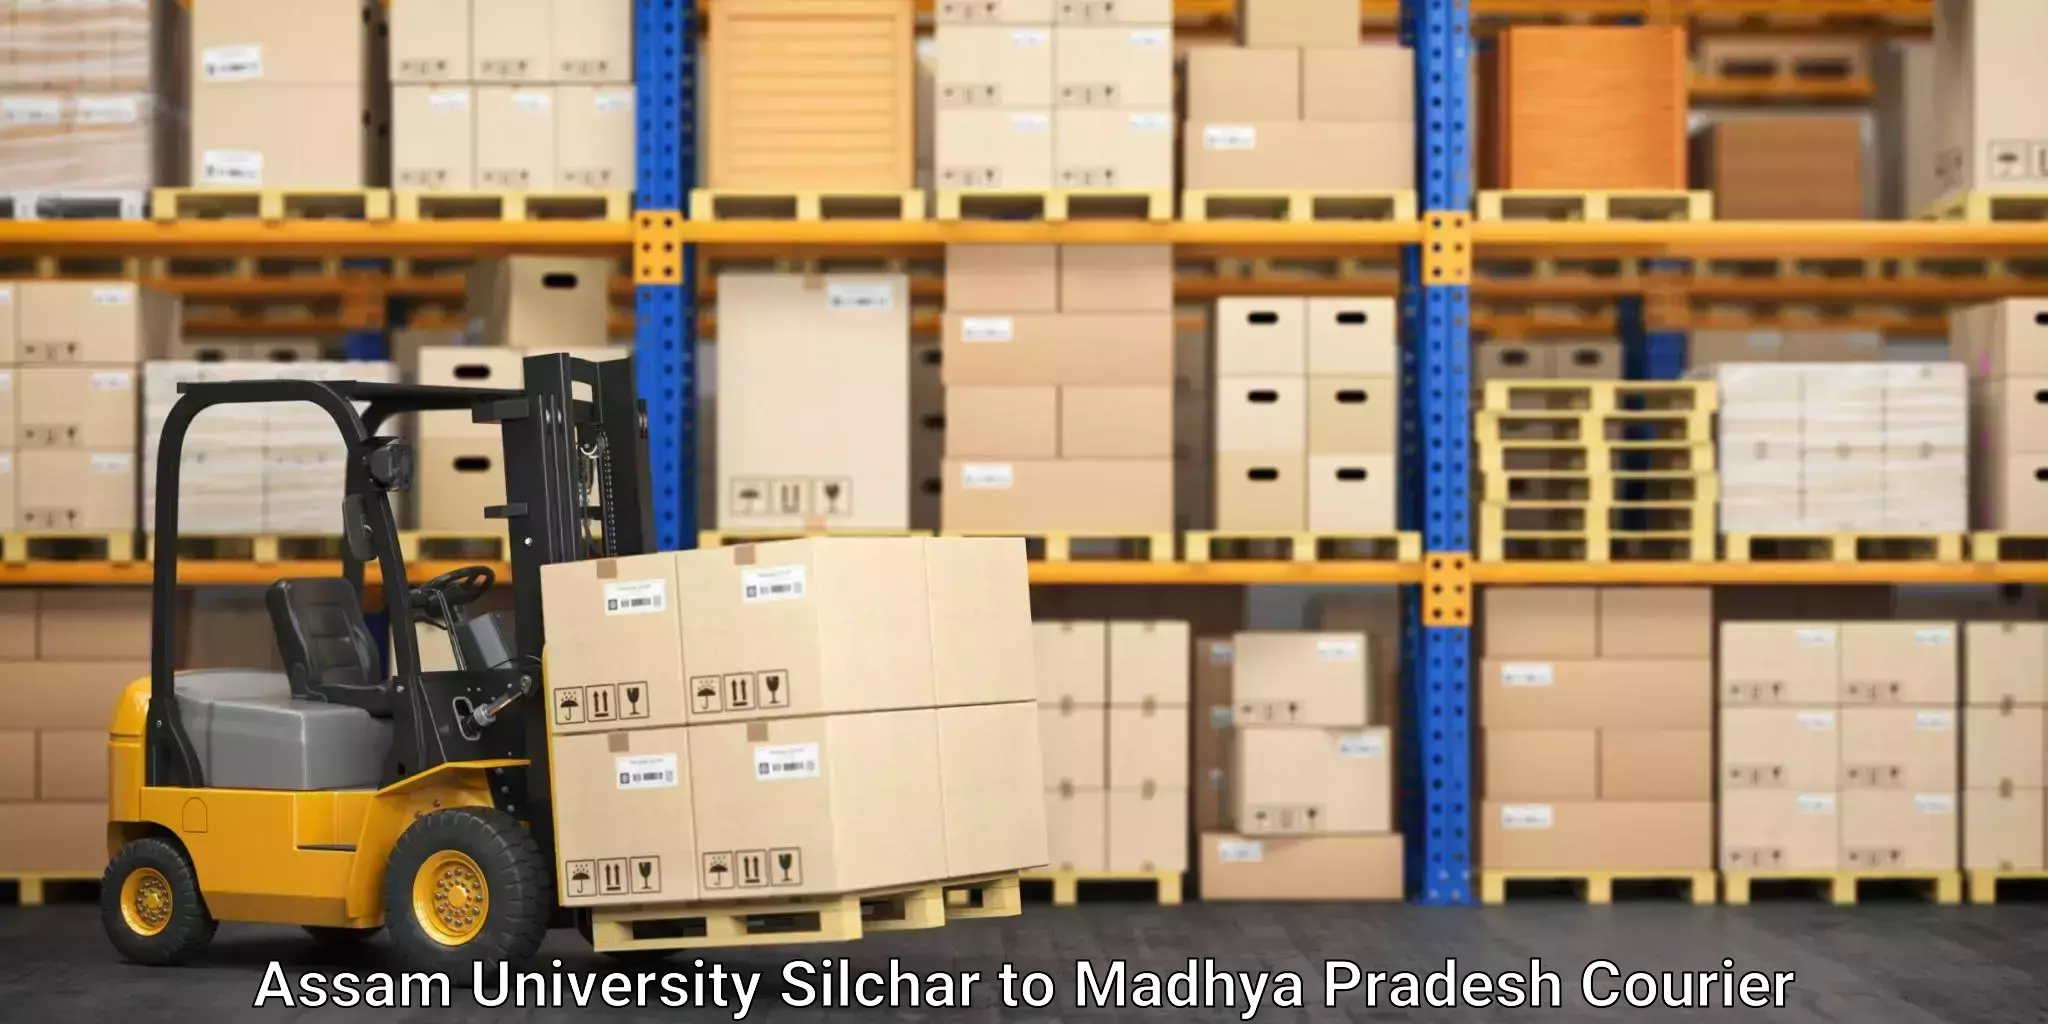 Reliable parcel services Assam University Silchar to Amarkantak